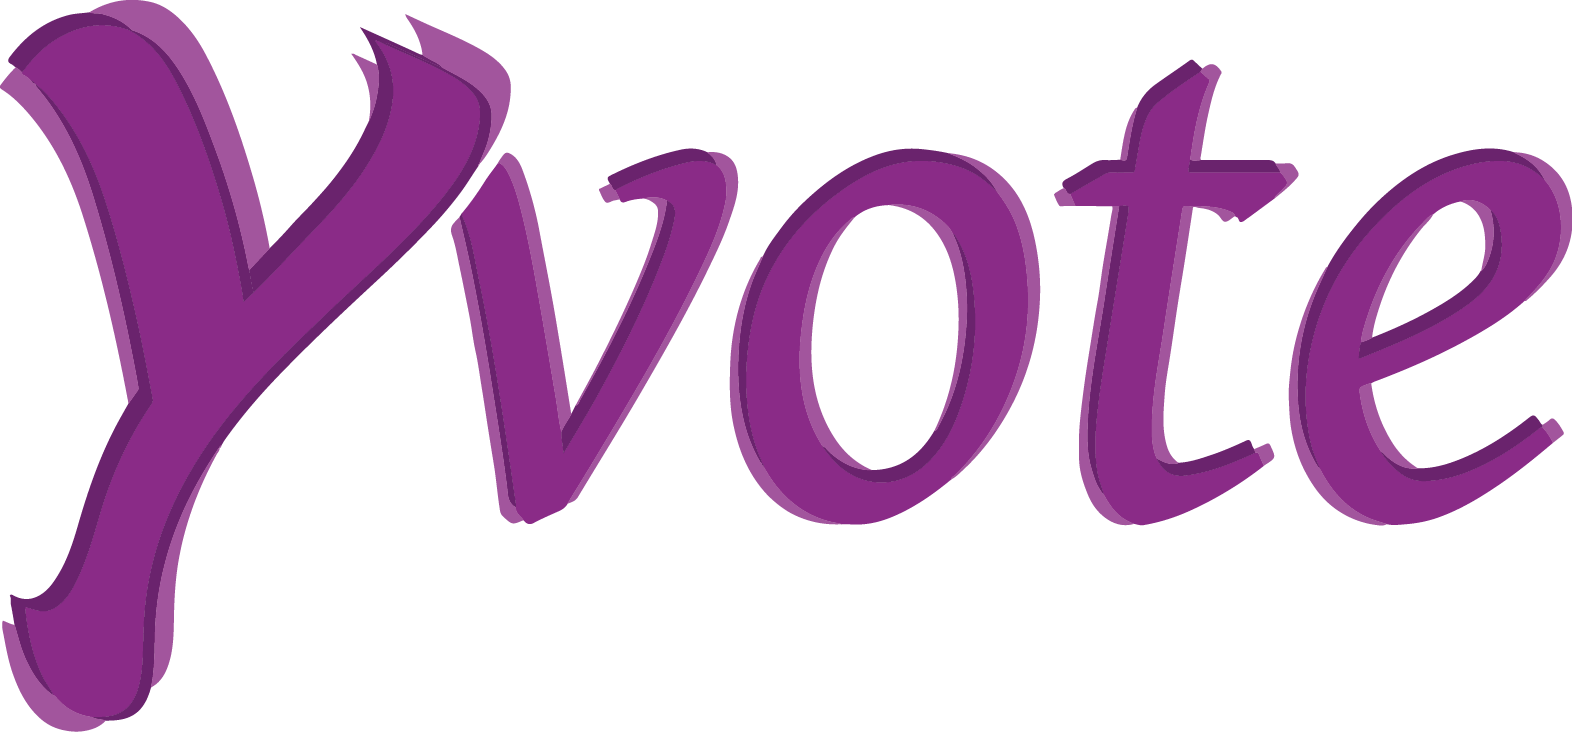 Y Vote - Lavender Clipart (1572x732), Png Download